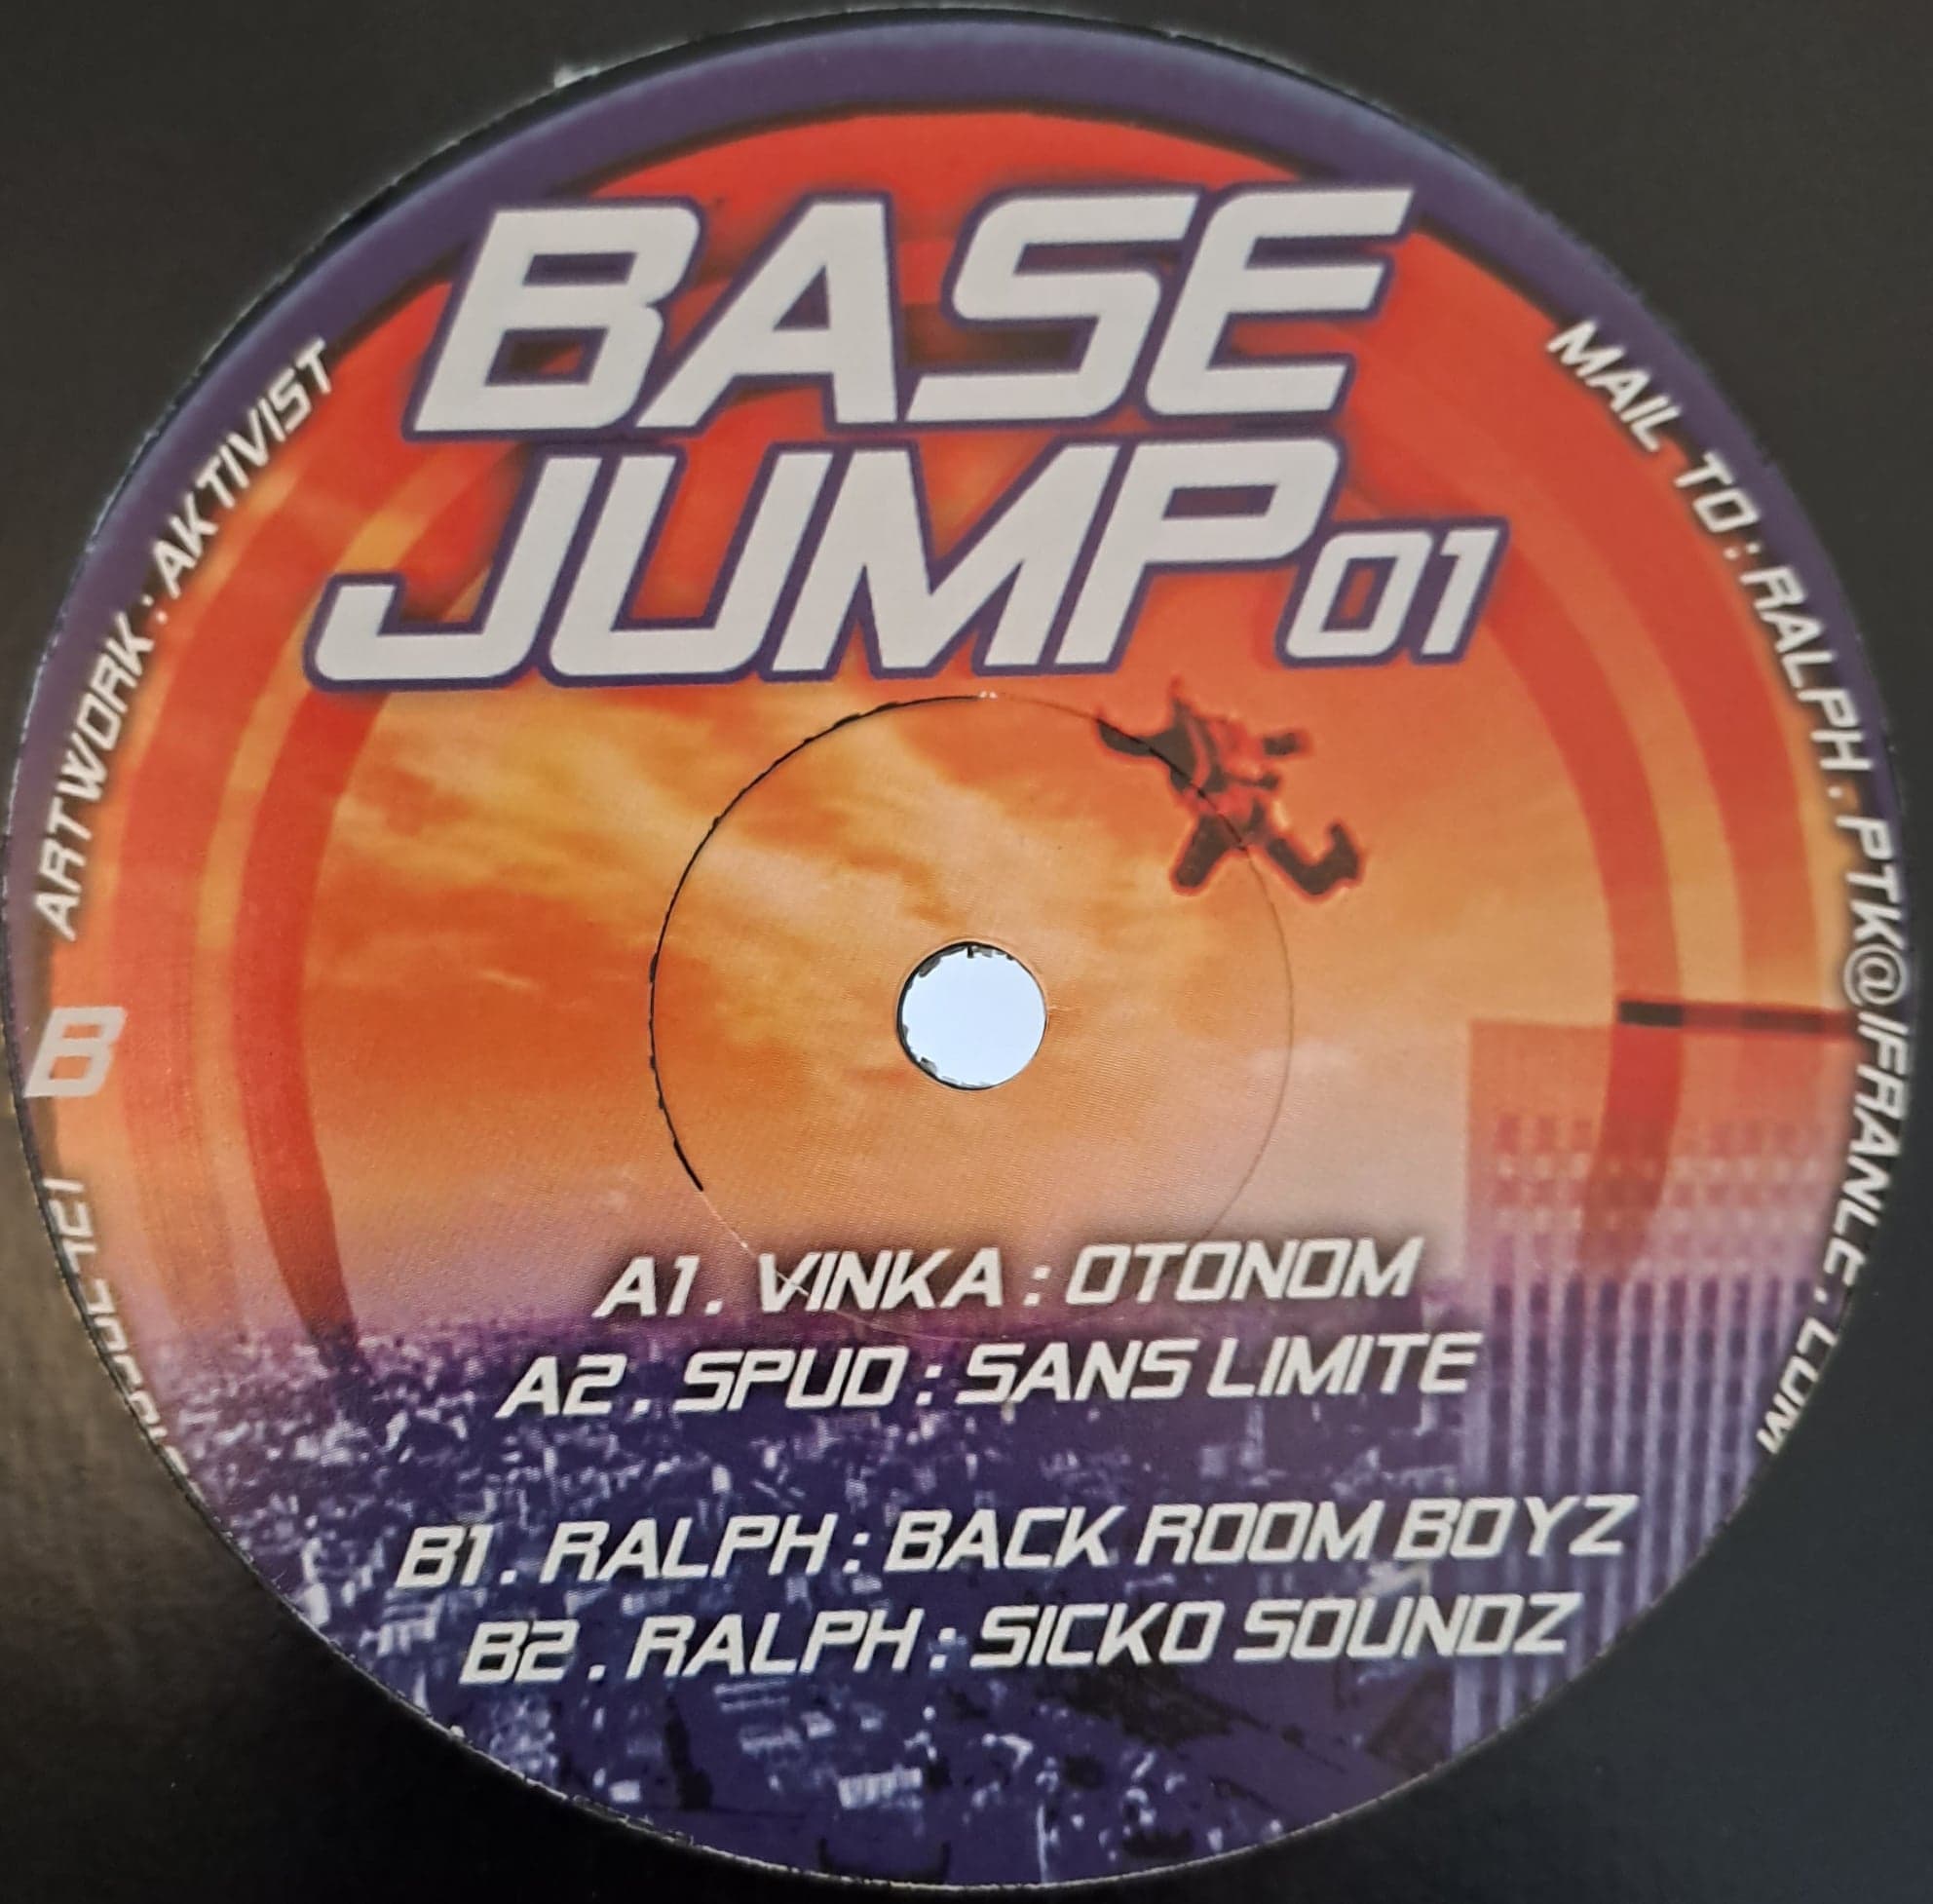 Base Jump 01 RP (toute dernière copie en stock) - vinyle freetekno